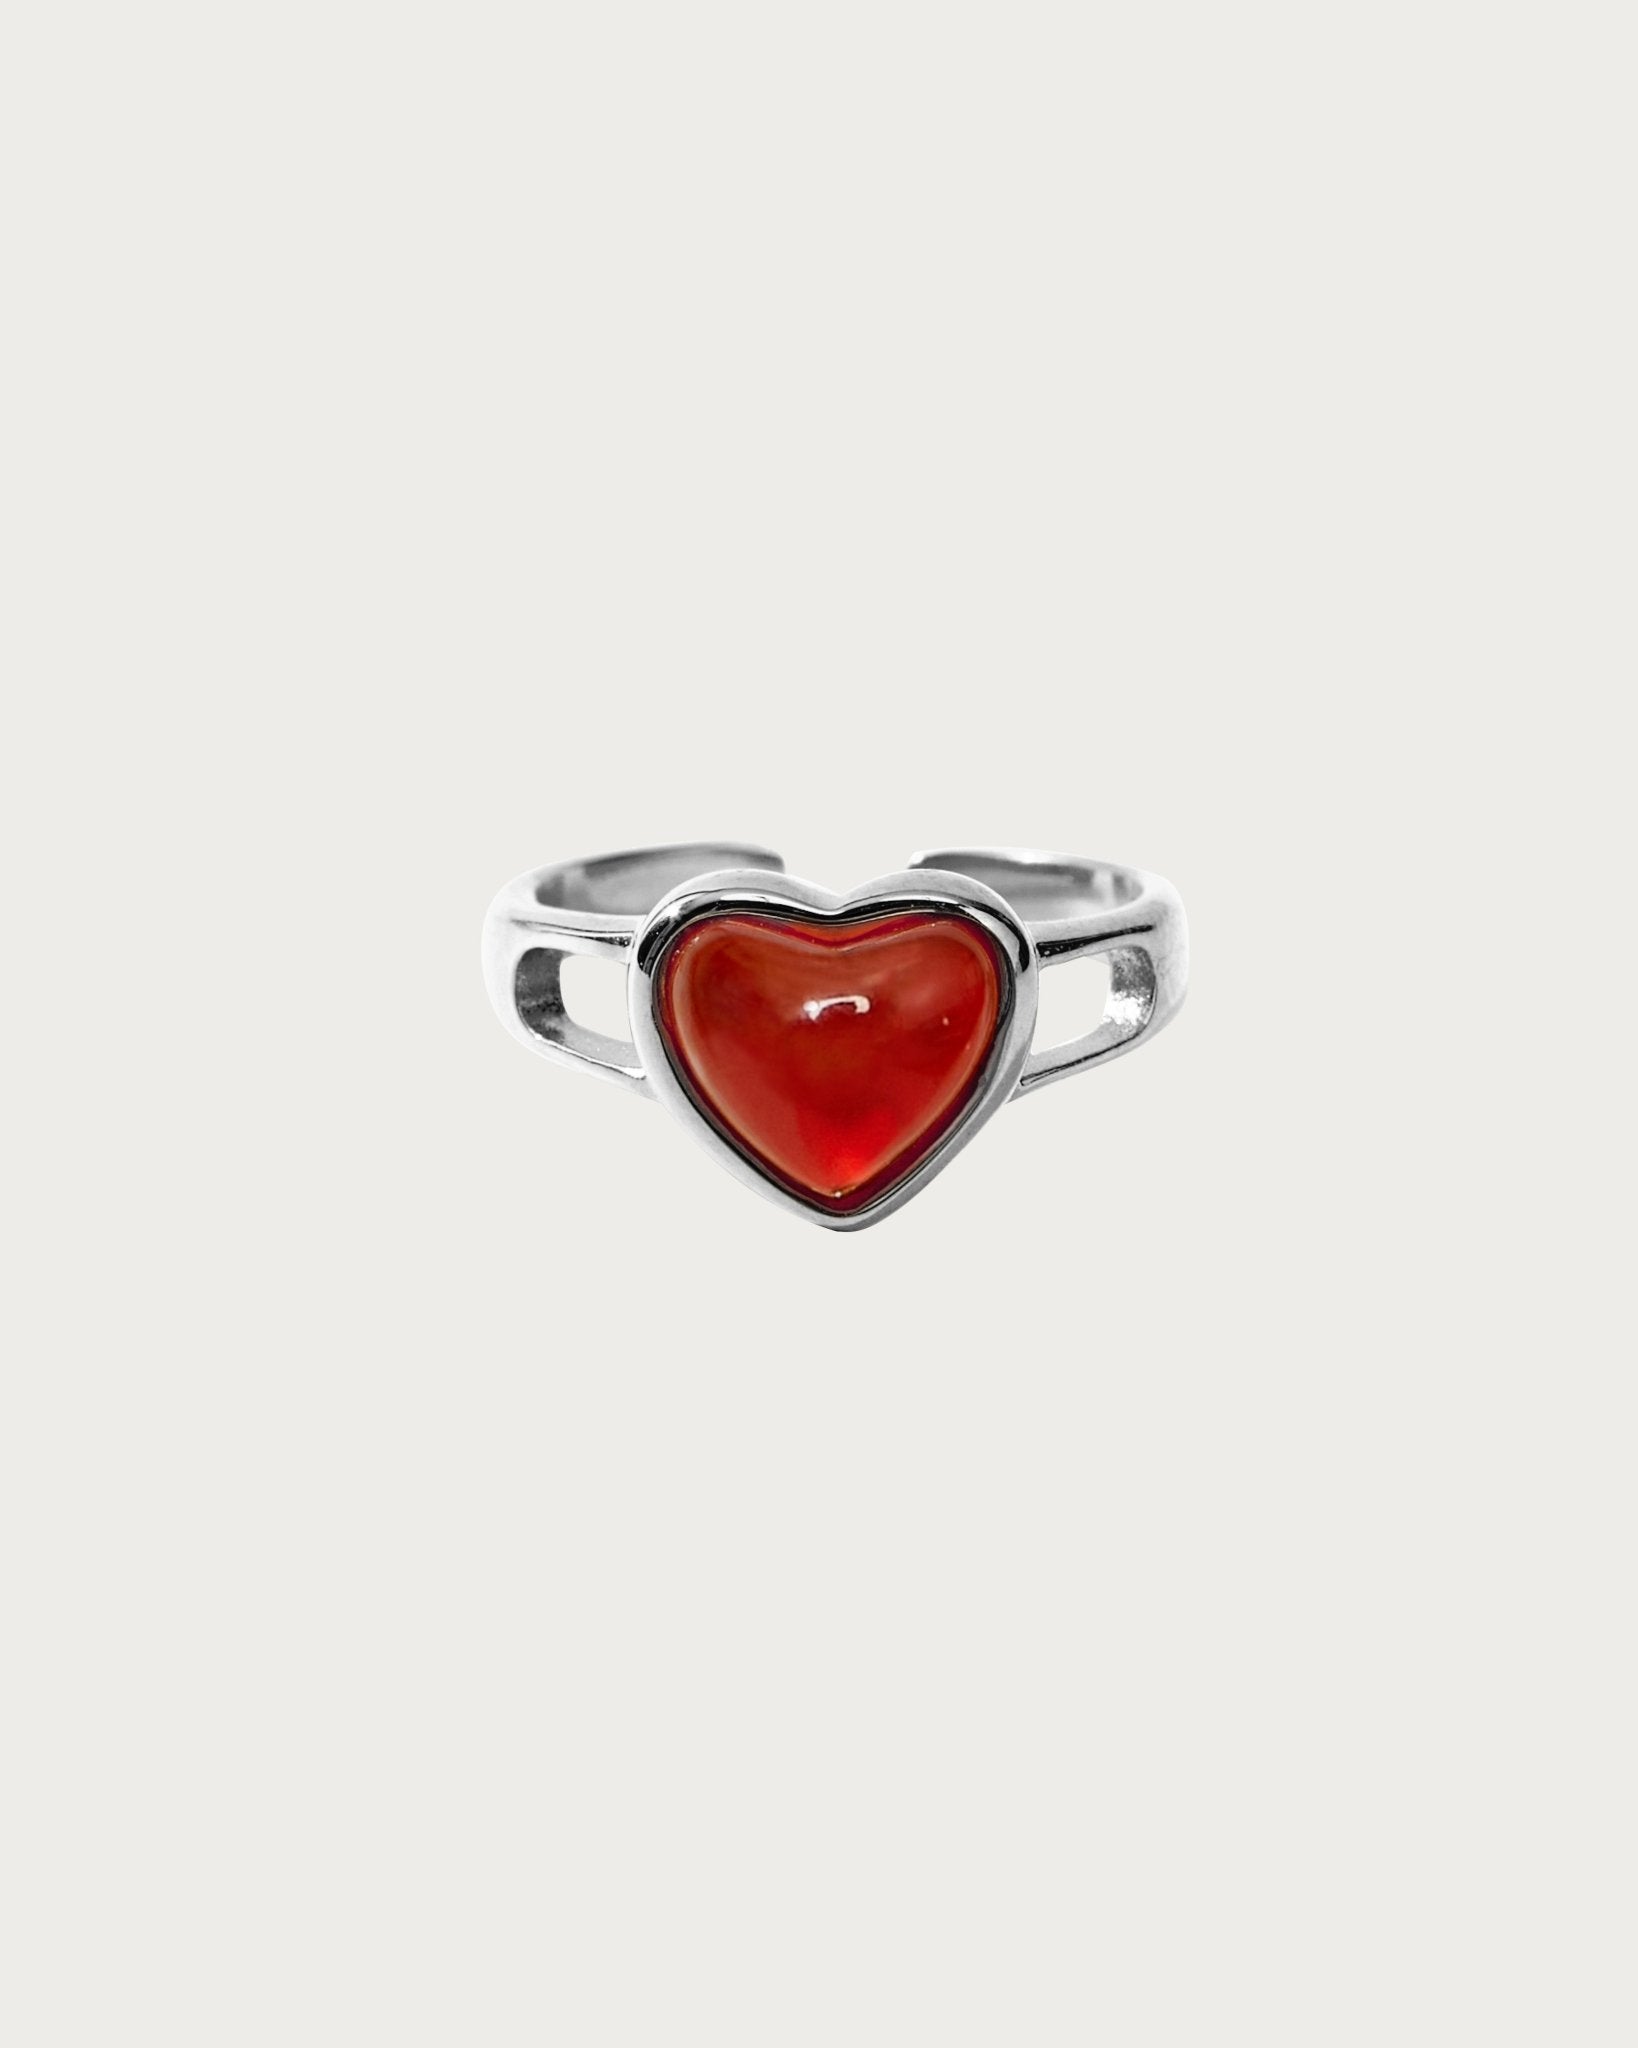 Carnelian Heart Ring